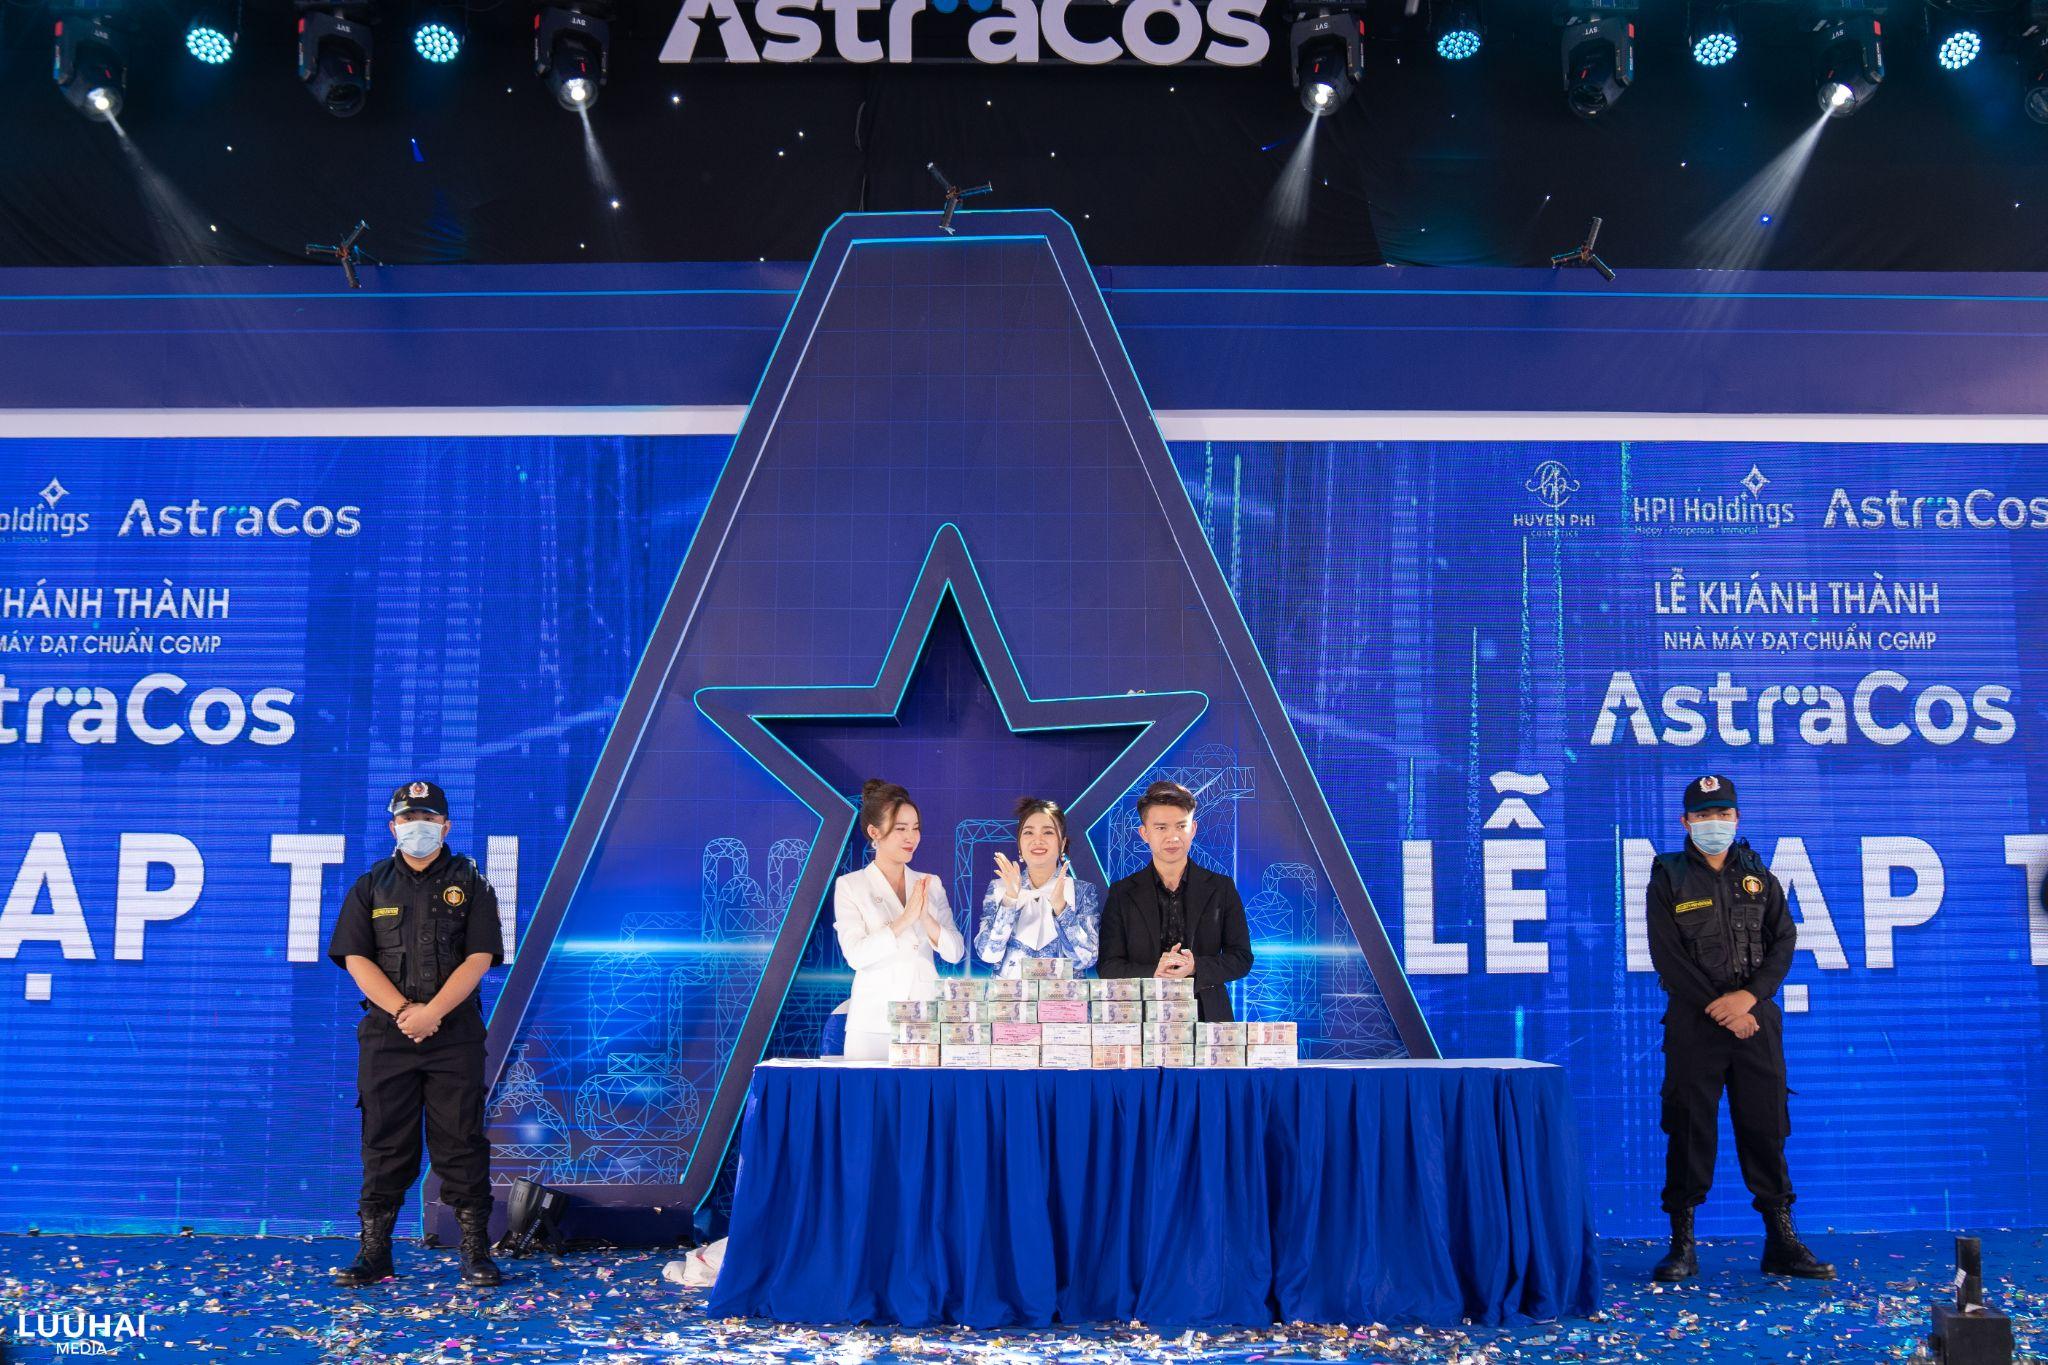 Lễ khánh thành nhà máy AstraCos - Sức mạnh nội lực của thương hiệu mỹ phẩm Việt - 4